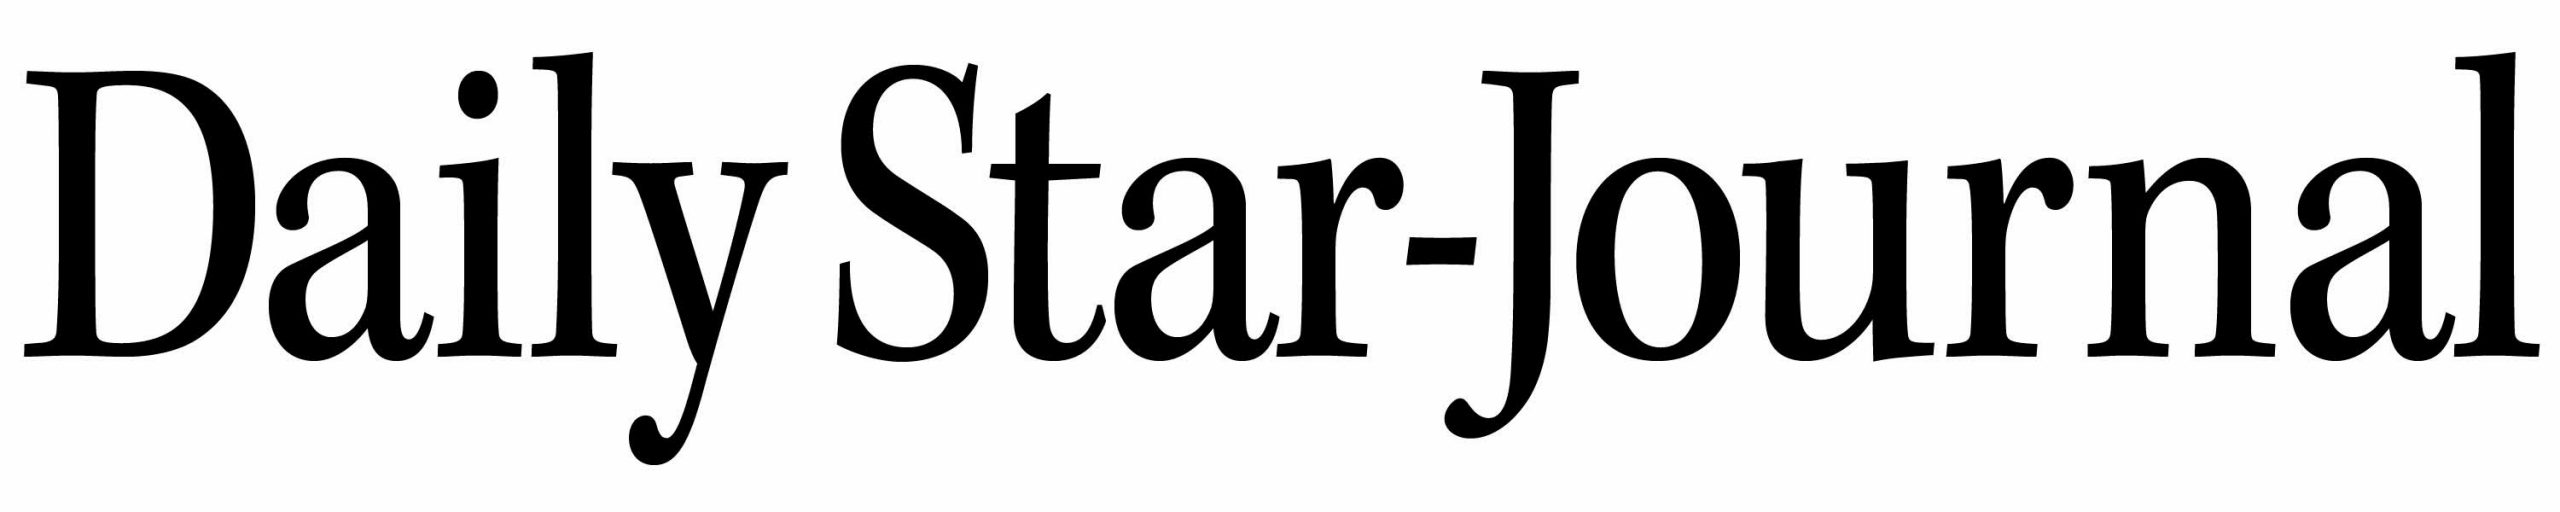 Star Journals